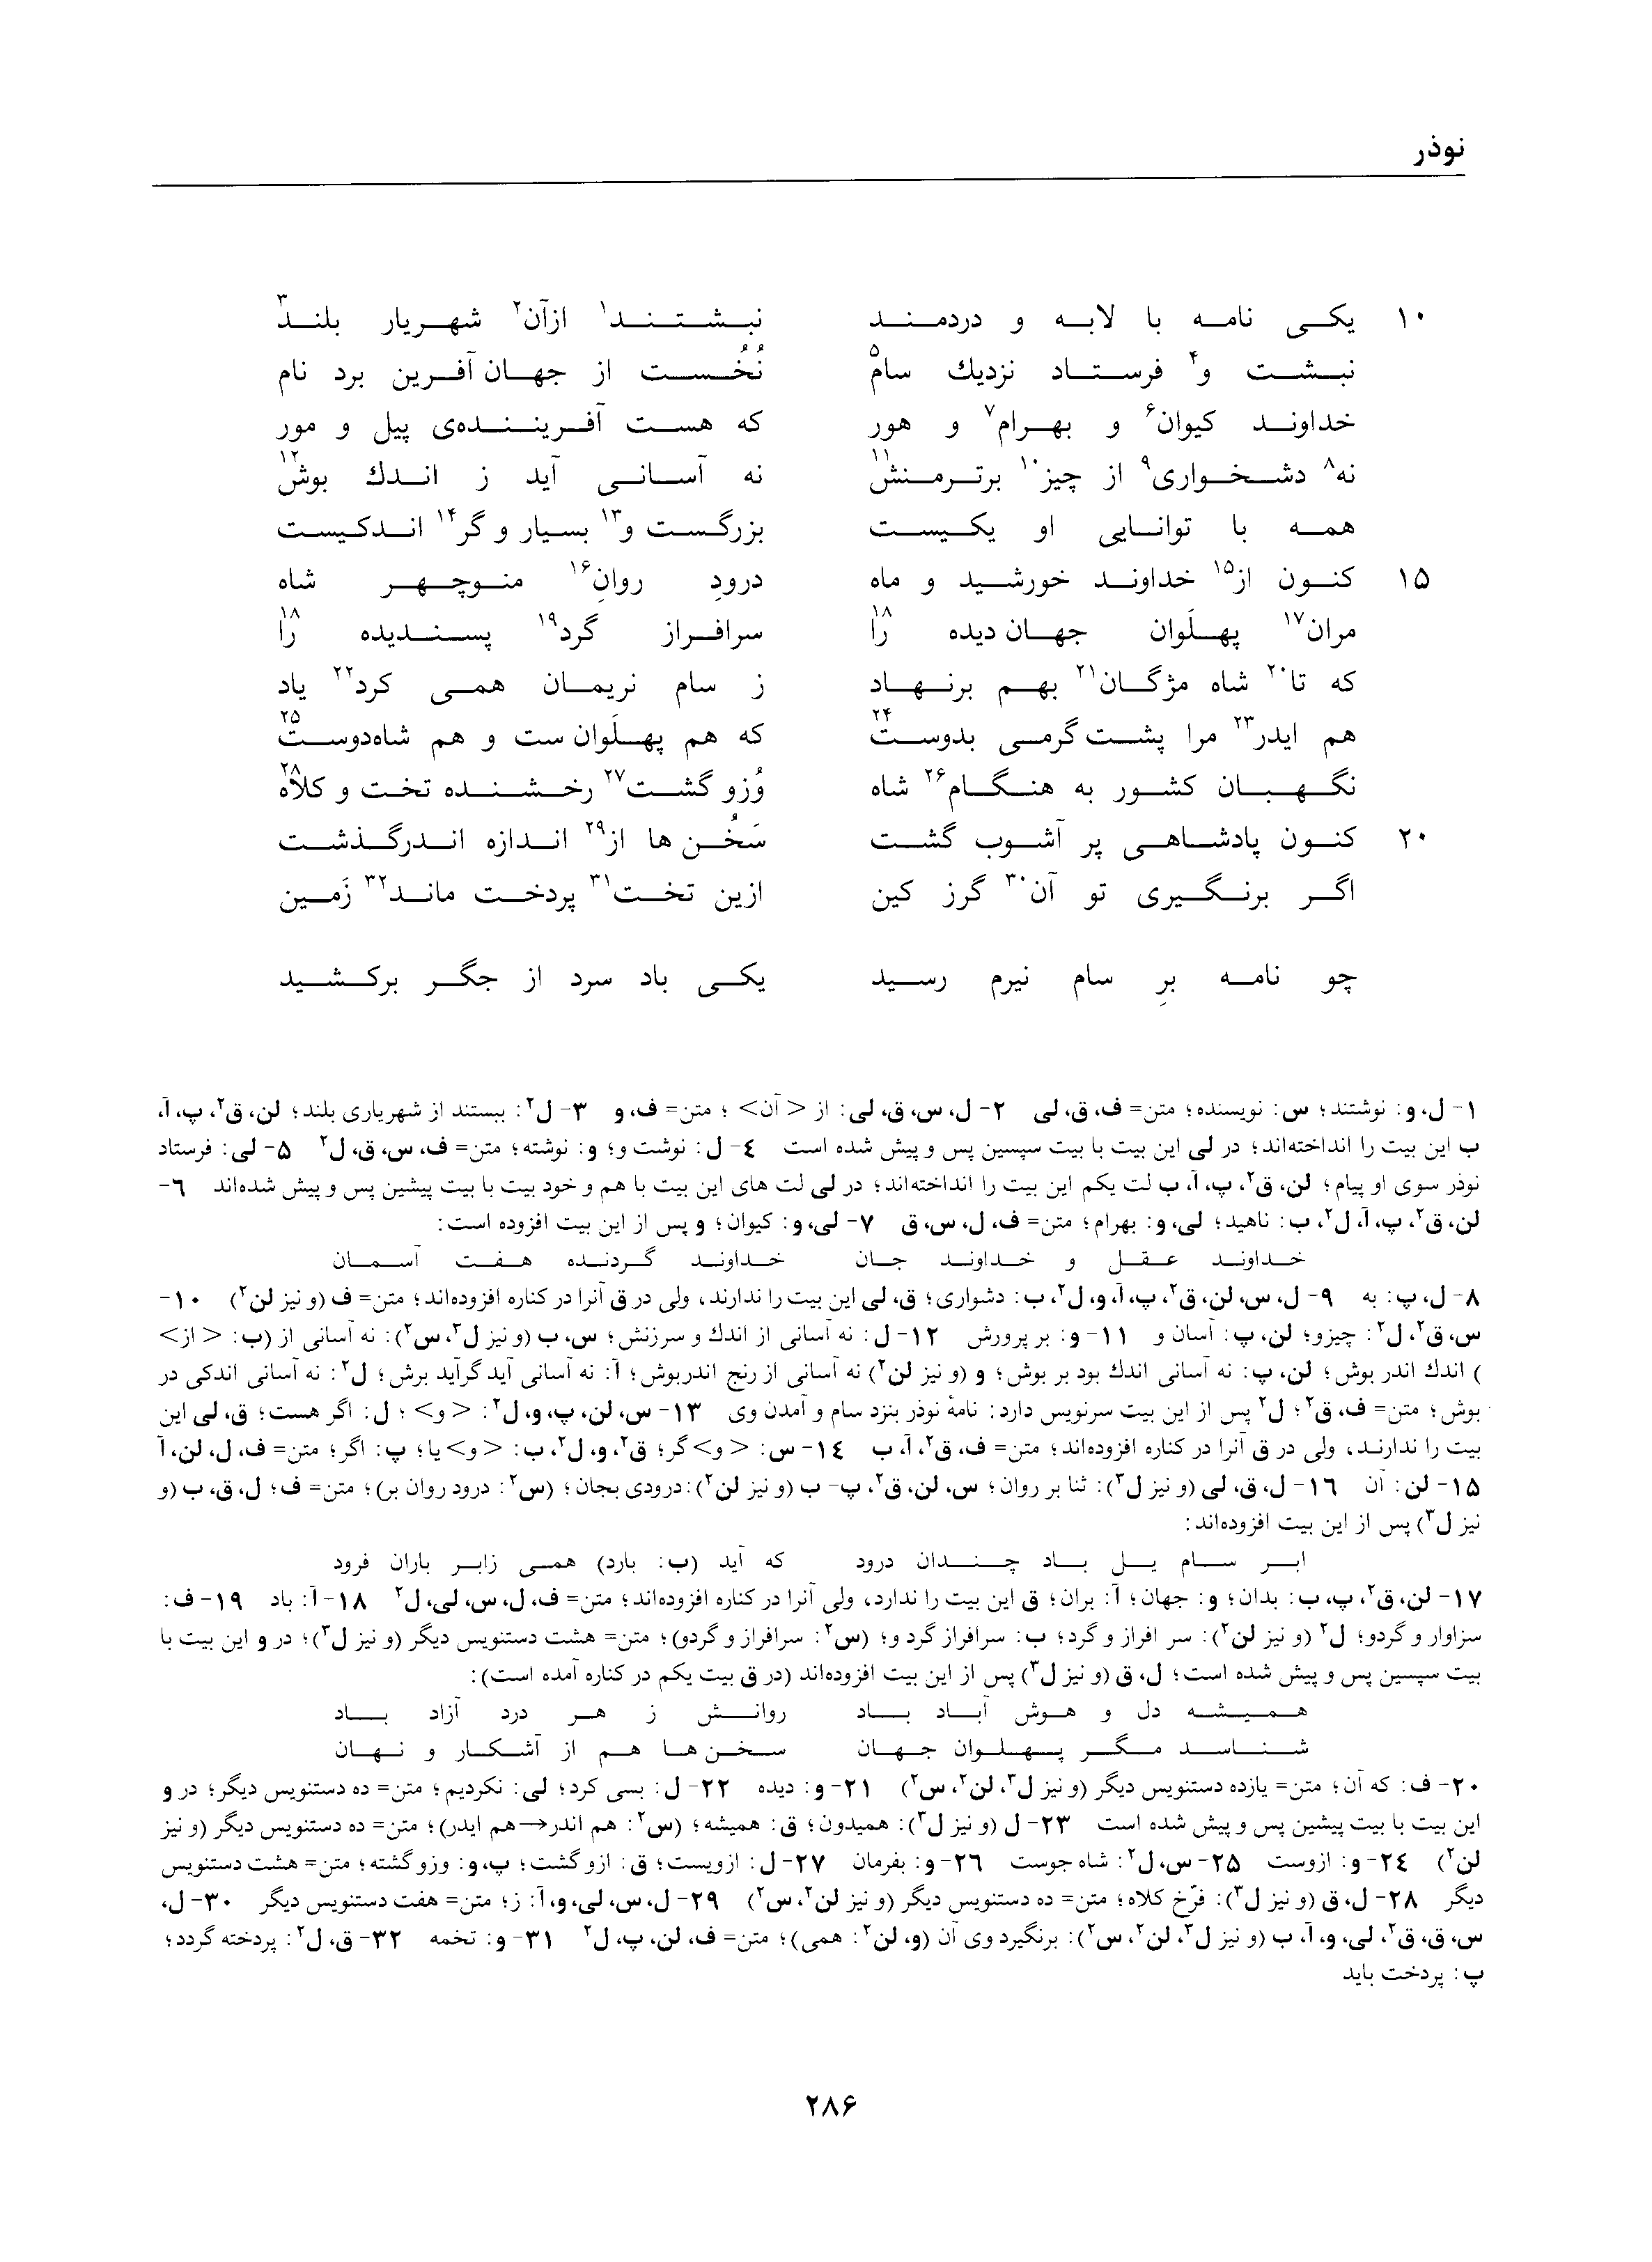 vol. 1, p. 286